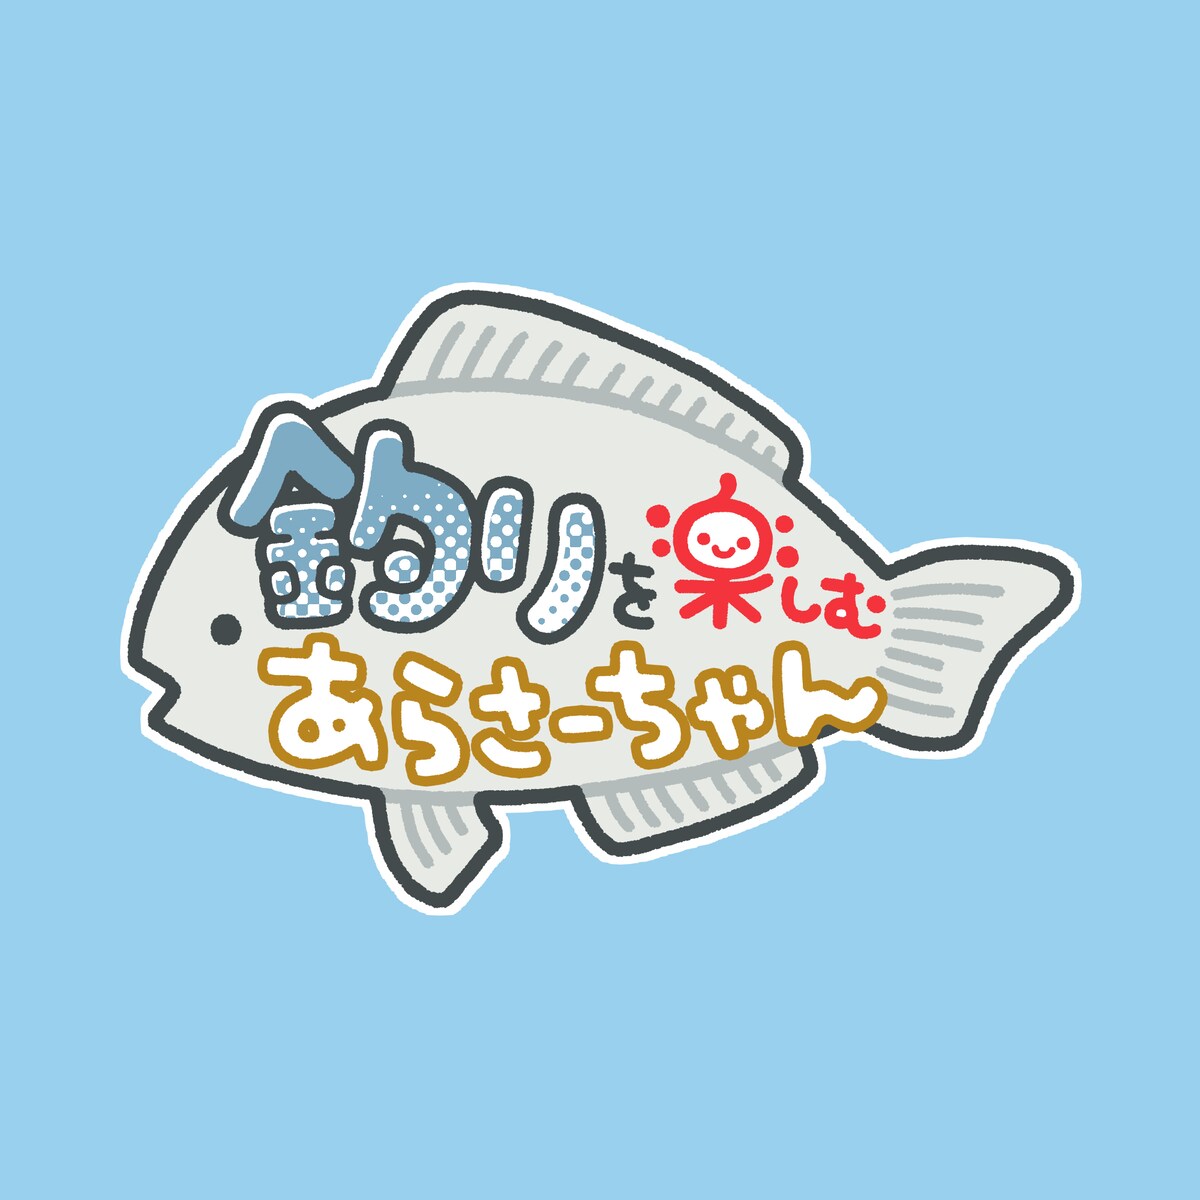 YouTubeチャンネル「釣りを楽しむあらさーちゃん」ロゴ